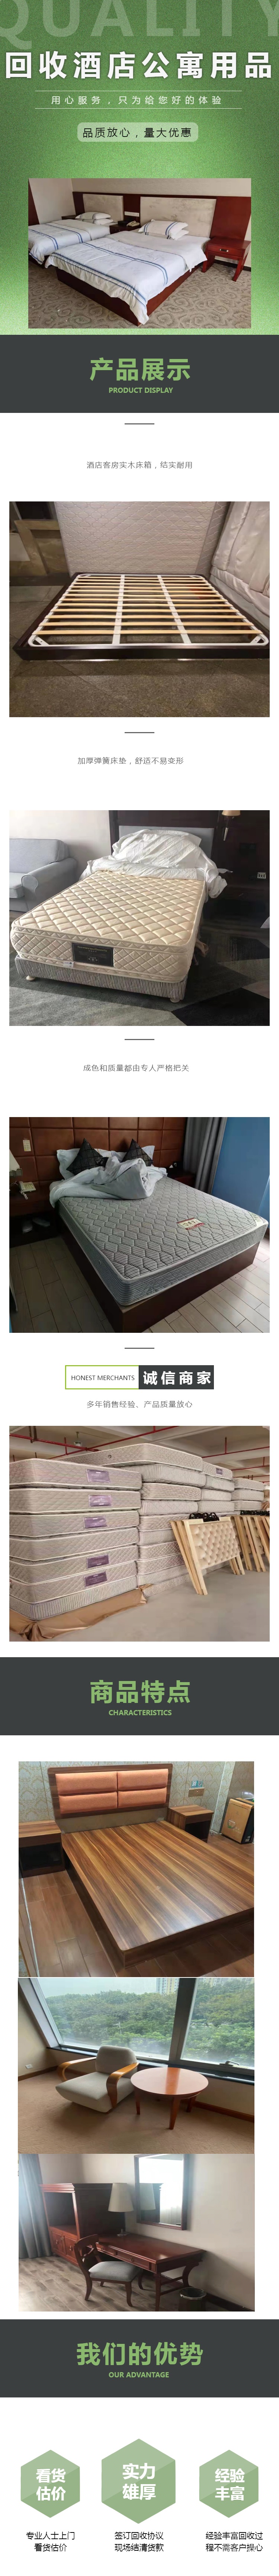 深圳回收酒店公寓用品 深圳公寓家具家电回收公司